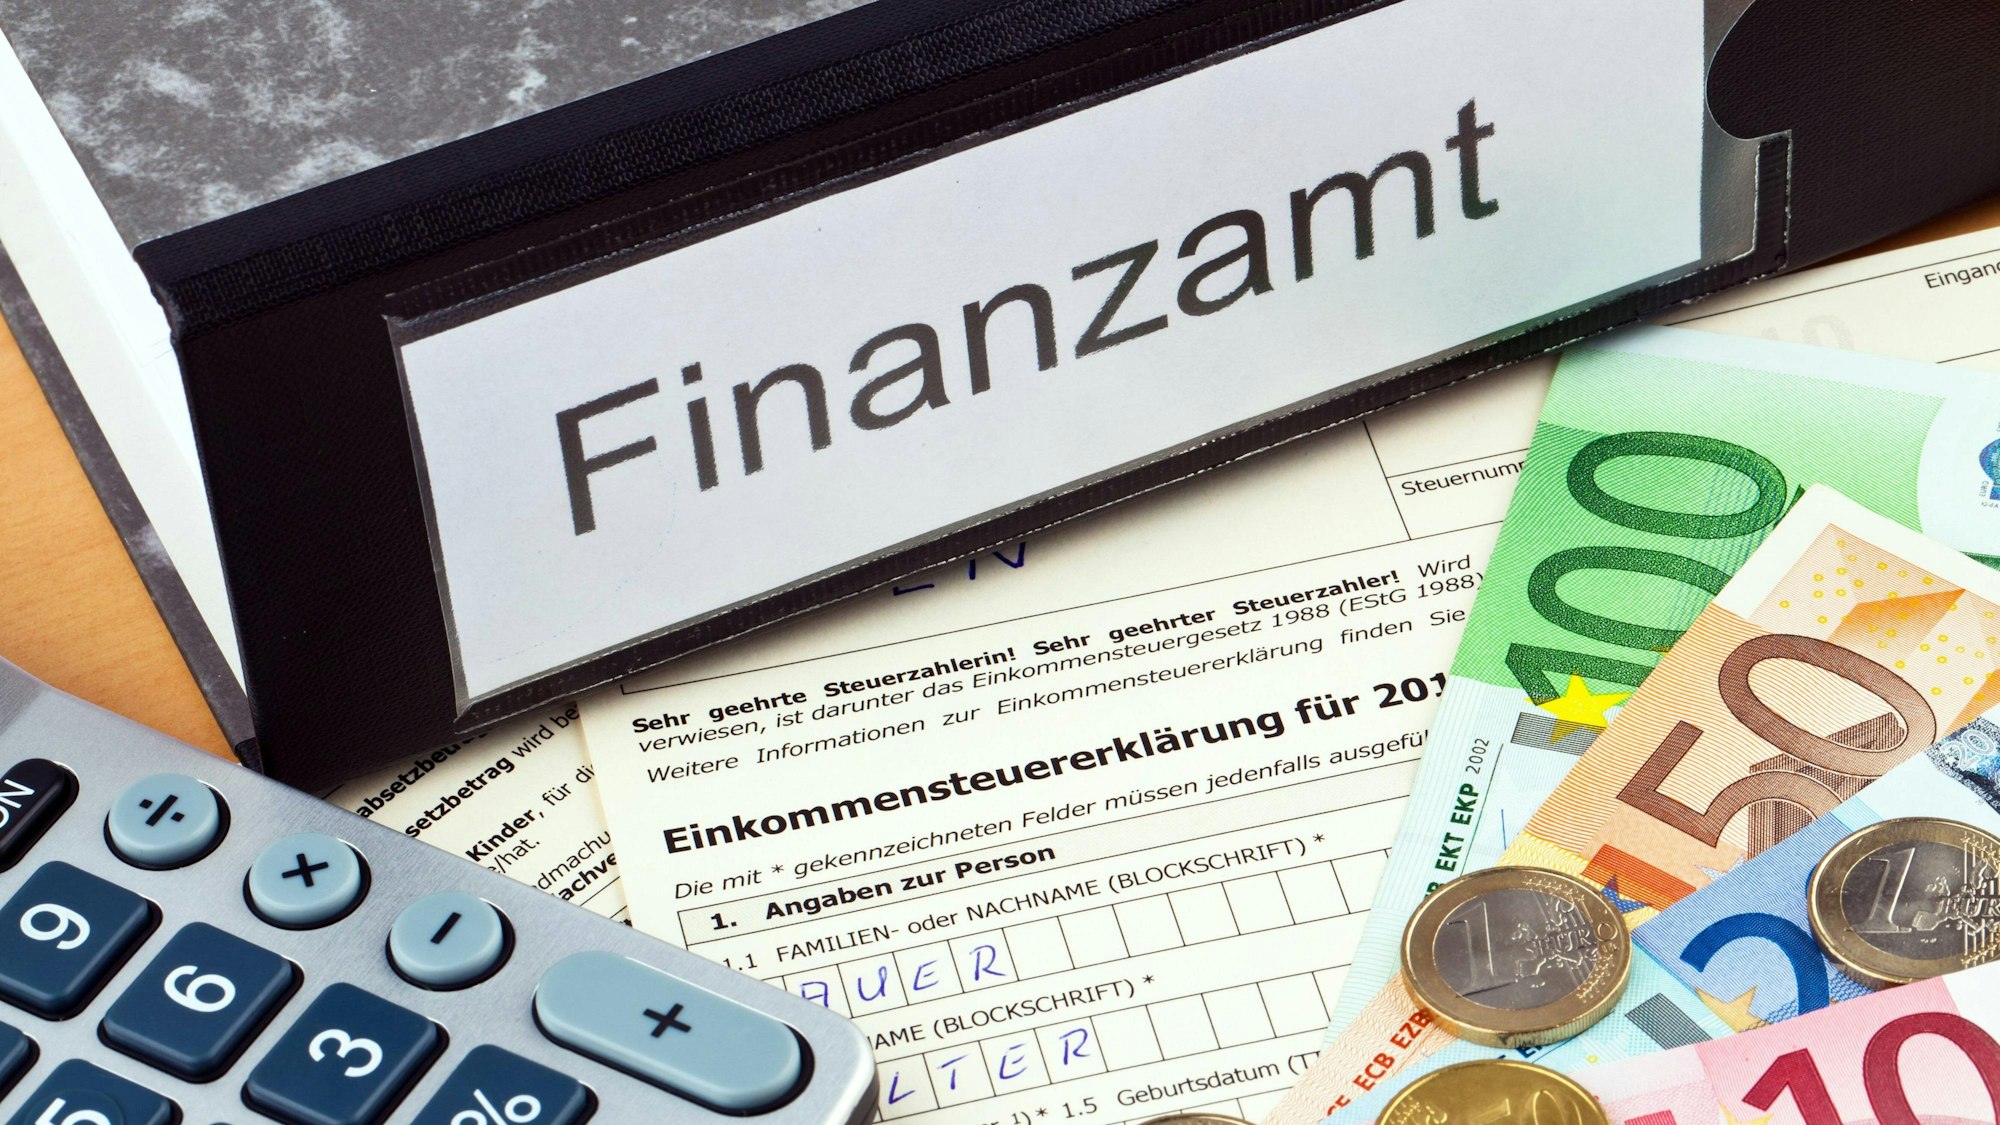 Steuerunterlagen des Finanzamts sind auf einem Symbolbild zu sehen sowie Bargeldscheine und ein Taschenrechner.